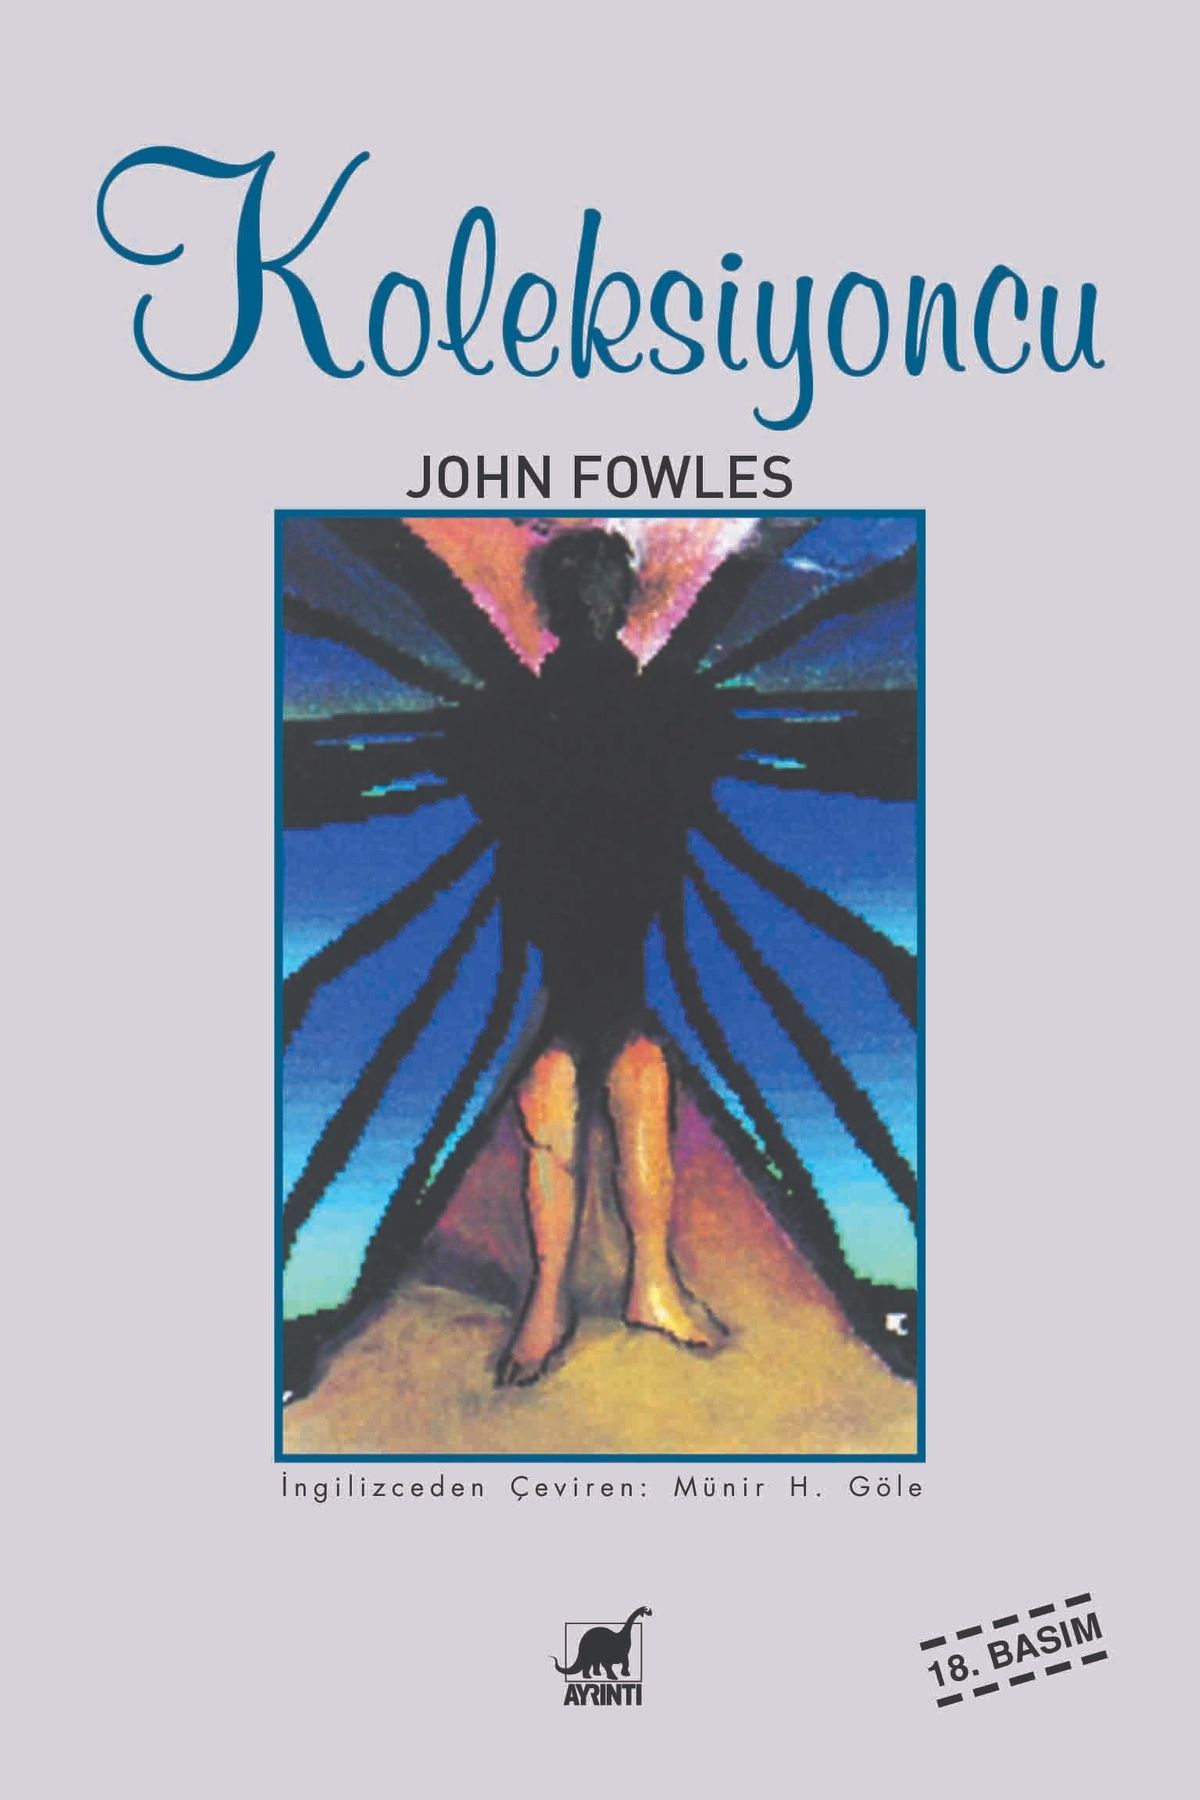 Ayrıntı Yayınları Koleksiyoncu John Fowles - John Fowles